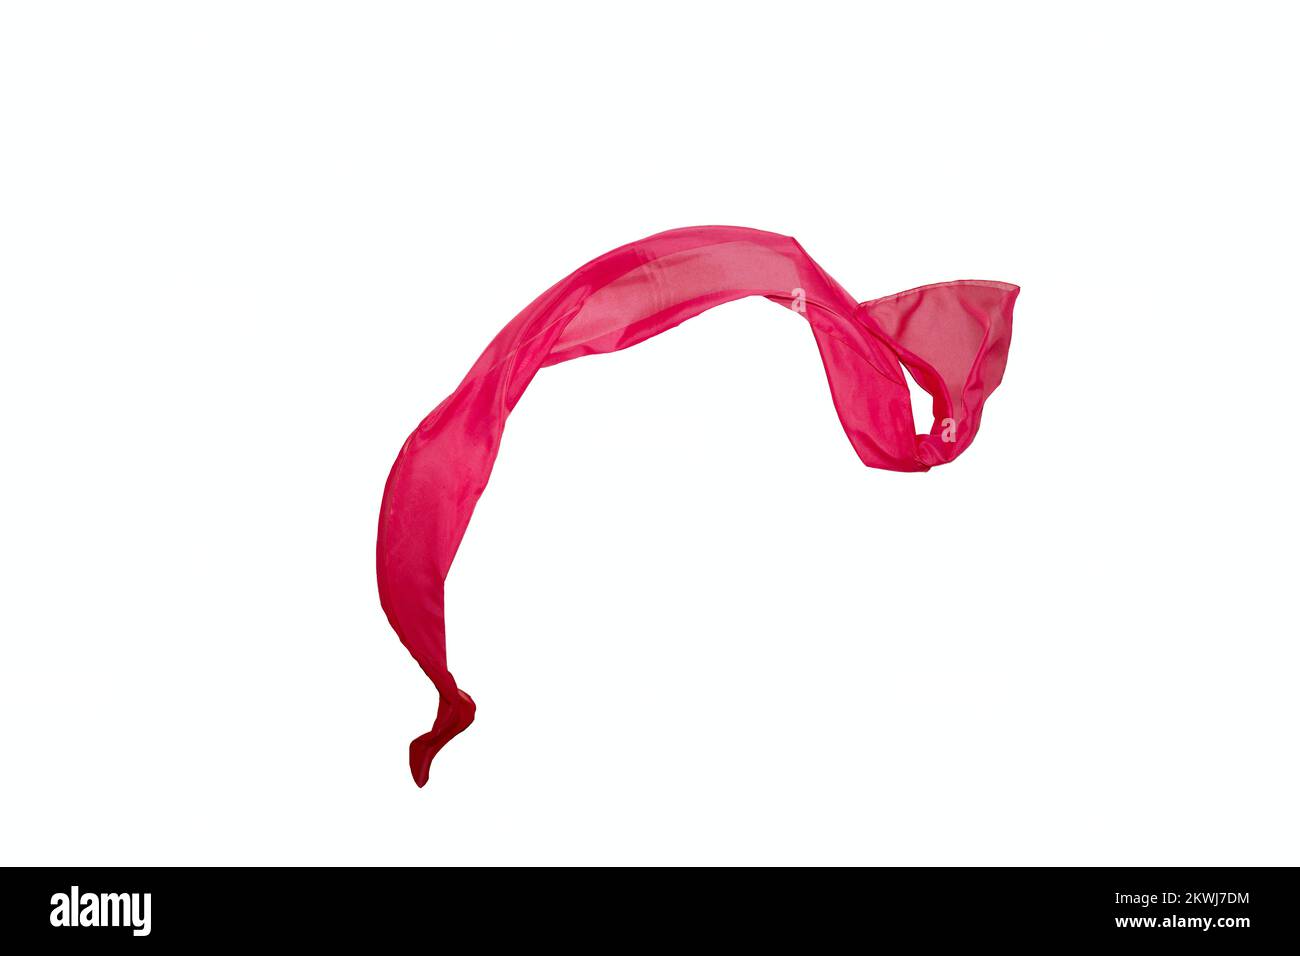 foulard en soie rouge ondulé isolé sur fond blanc. Photo de haute qualité Banque D'Images